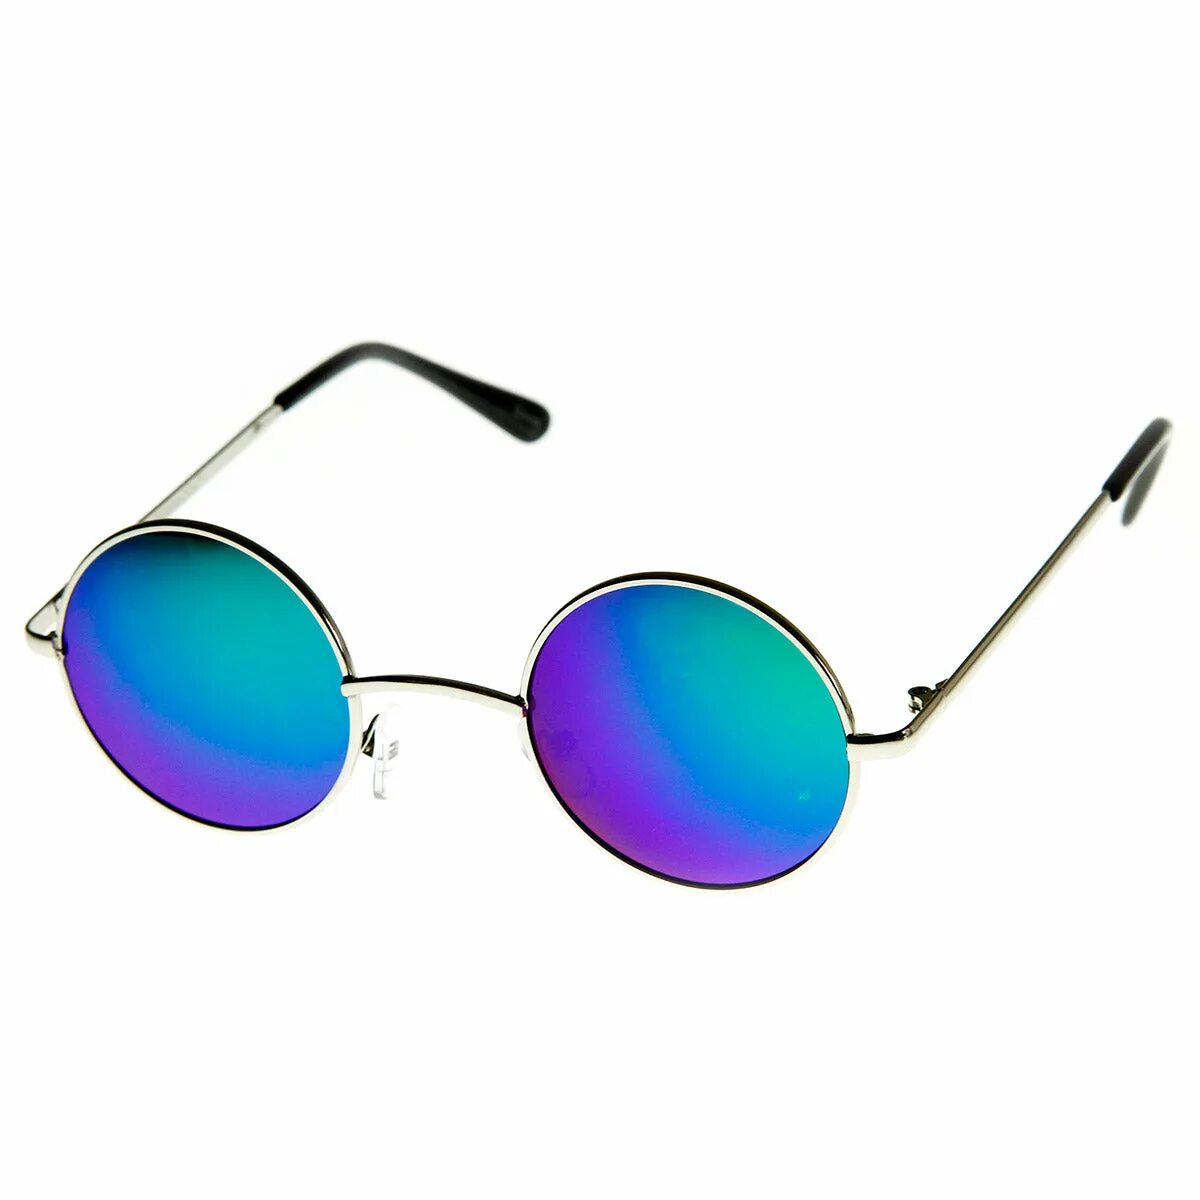 Round sunglasses. Очки солнцезащитные Vintage vts0356. Круглые очки. Круглые солнцезащитные очки. Очки круглые синие.